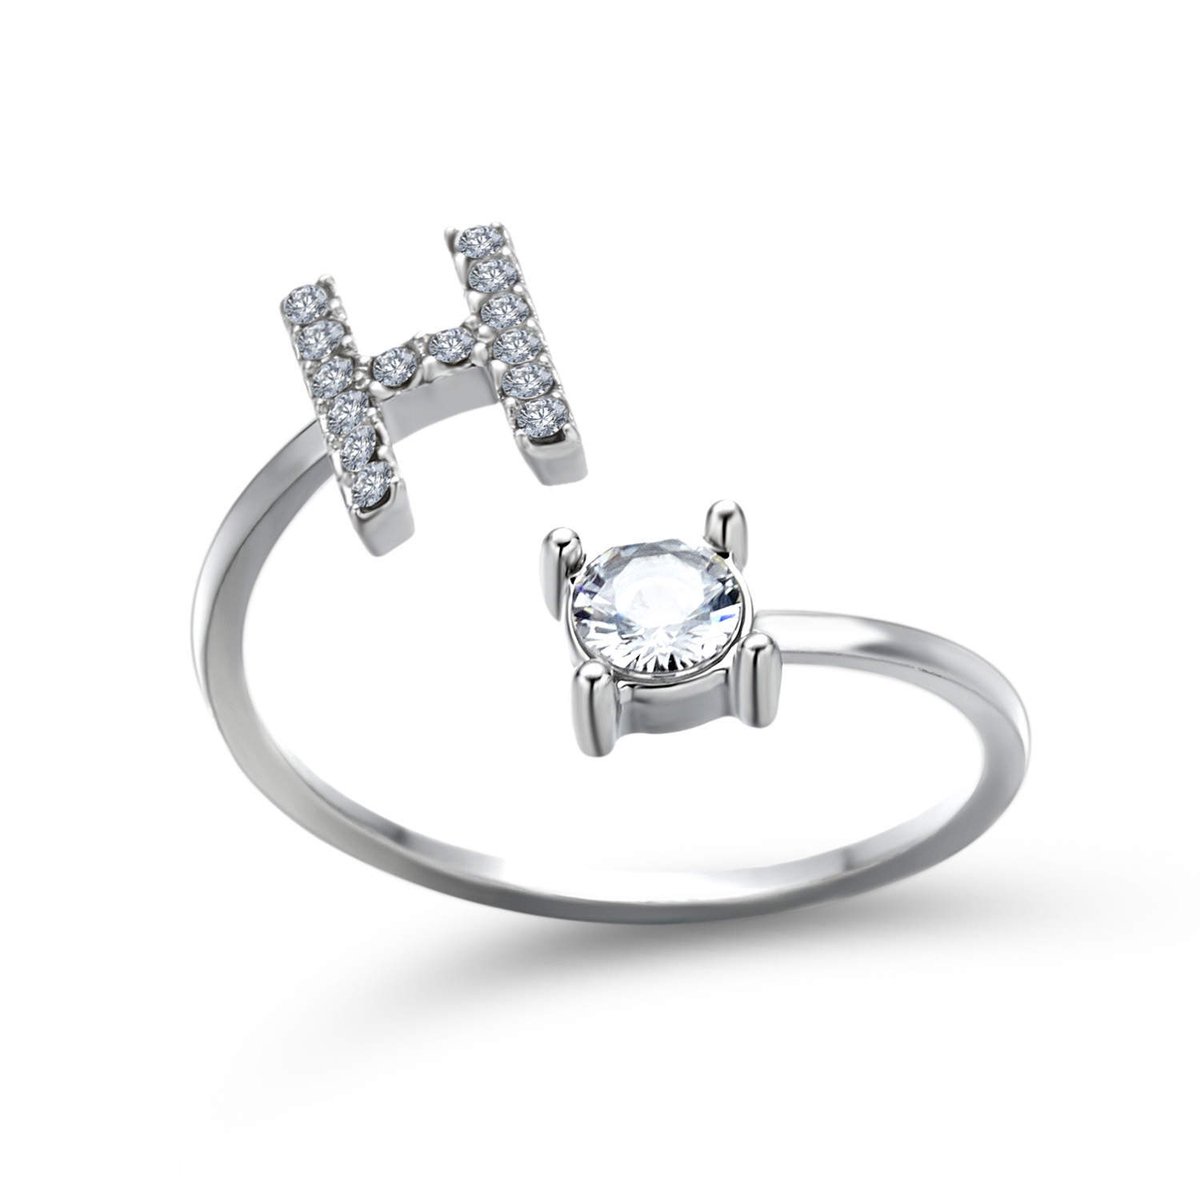 Ring met letter H - Ring met steen - Aanschuifring - Zilver kleurig - Ring Zilver dames - Cadeau voor vriendin - Vrouw - Sieraad meisje - Mooie ring tieners - Alfabet ring H - Ring met initiaal